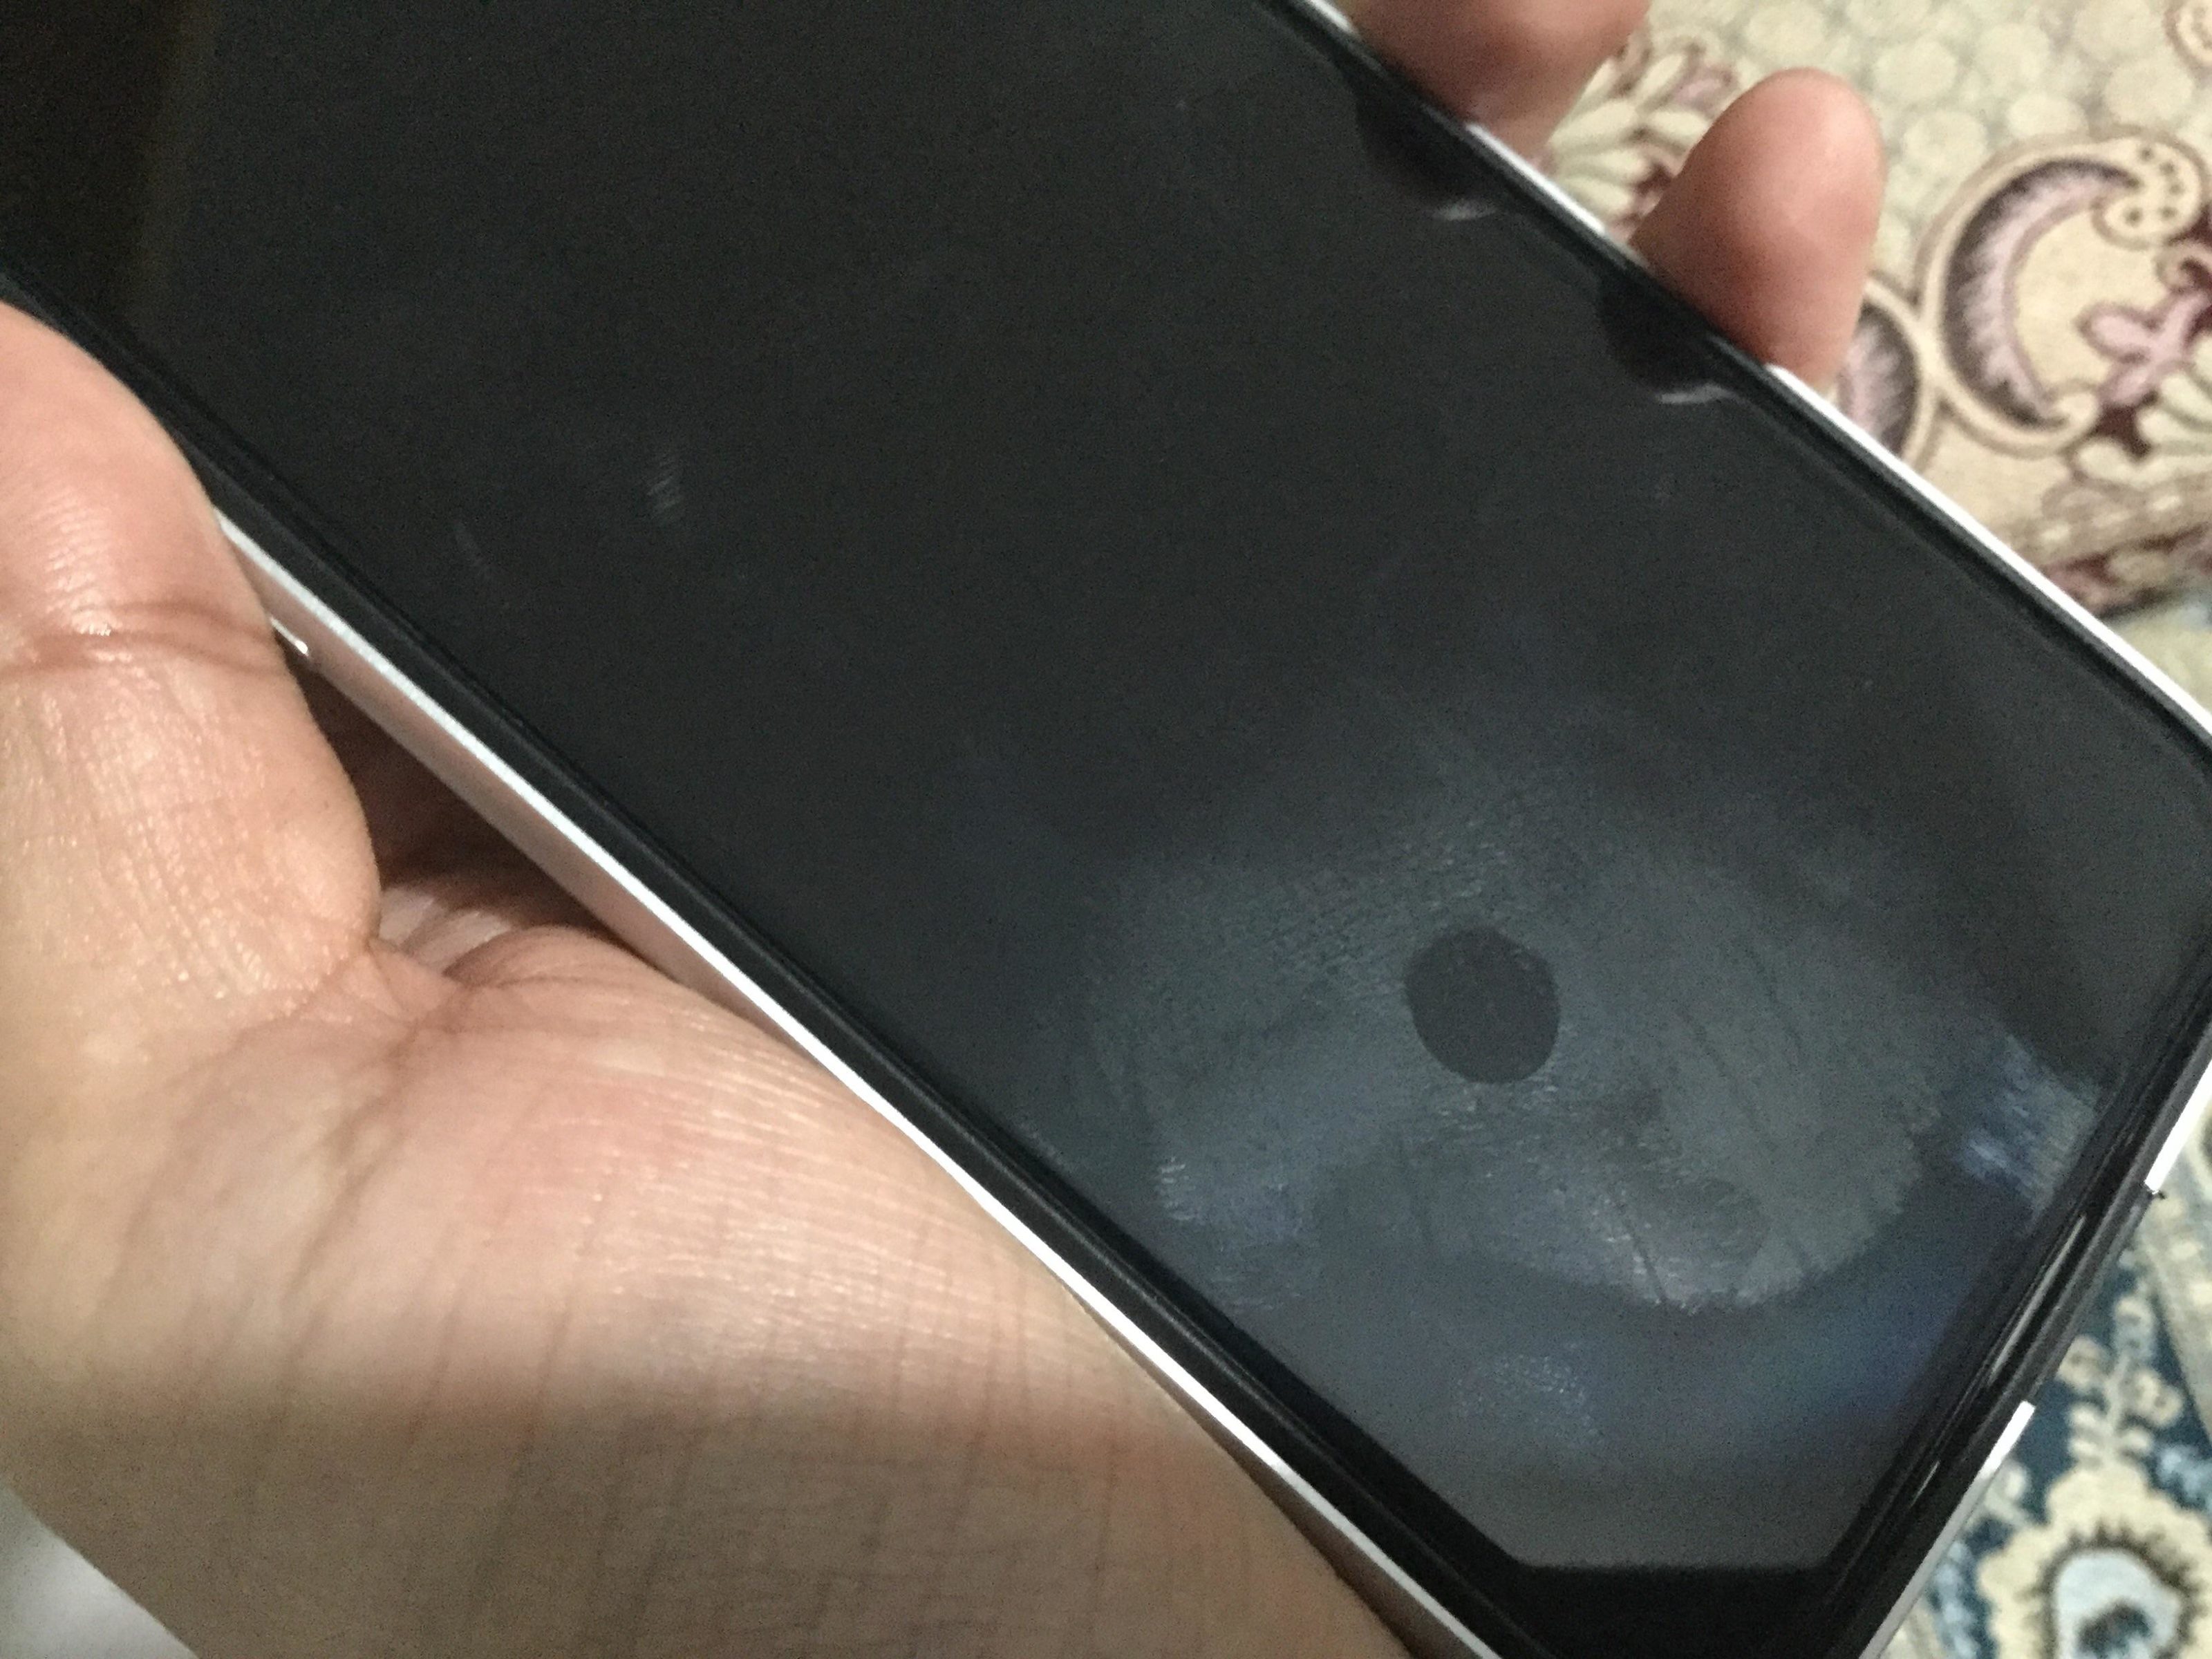 Problemi iPhone X, alcuni utenti lamentano bolle nel display e perdita dello strato oleofobico